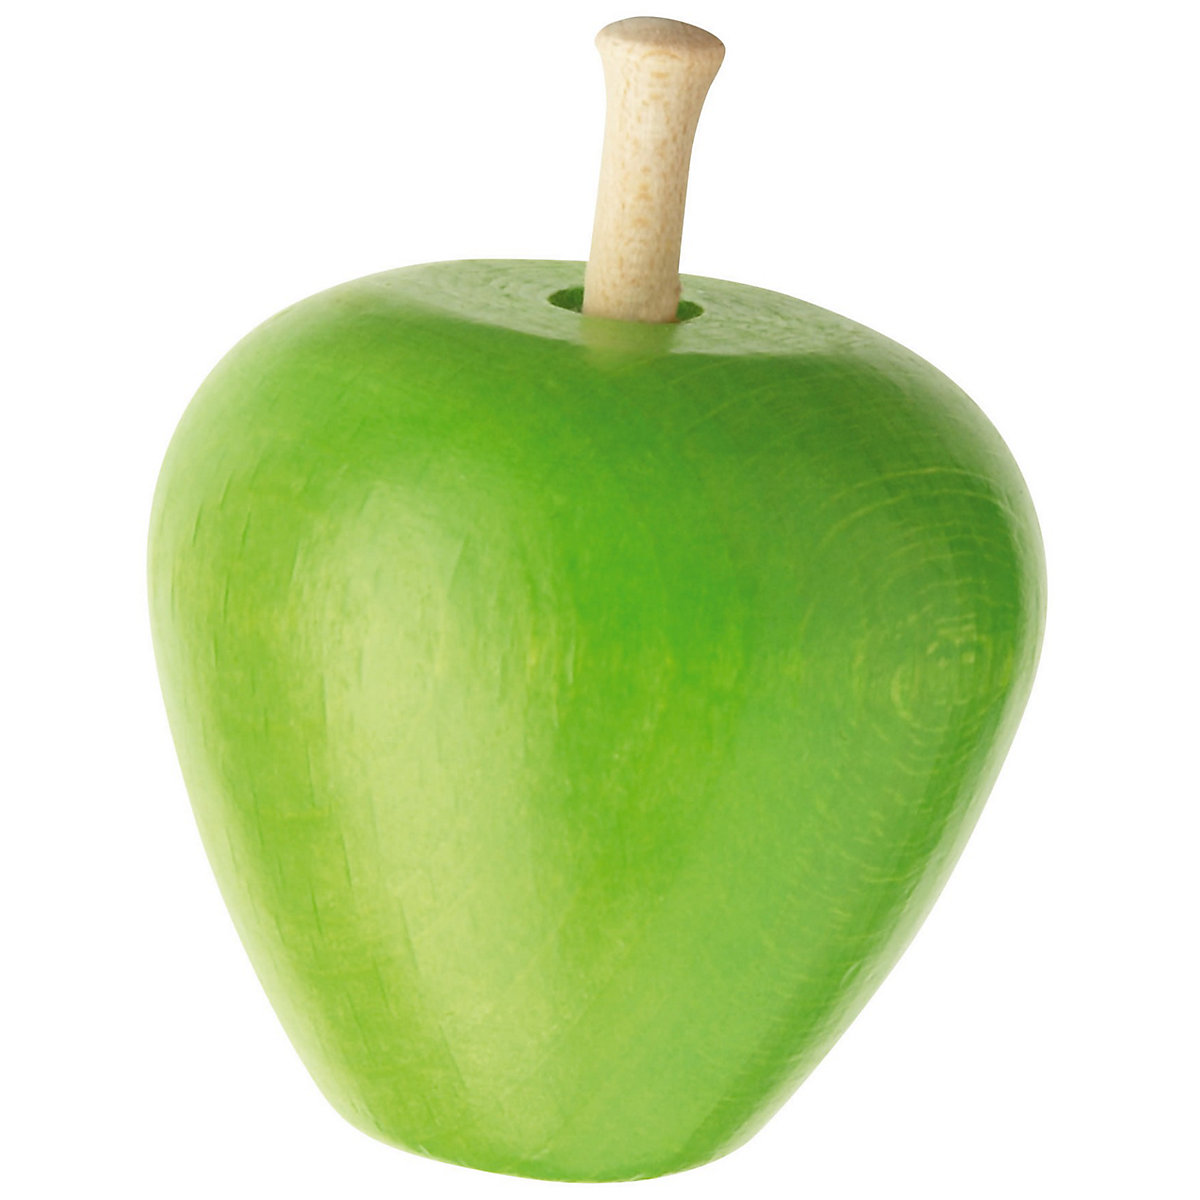 HABA 1347 KAUFLADEN Apfel